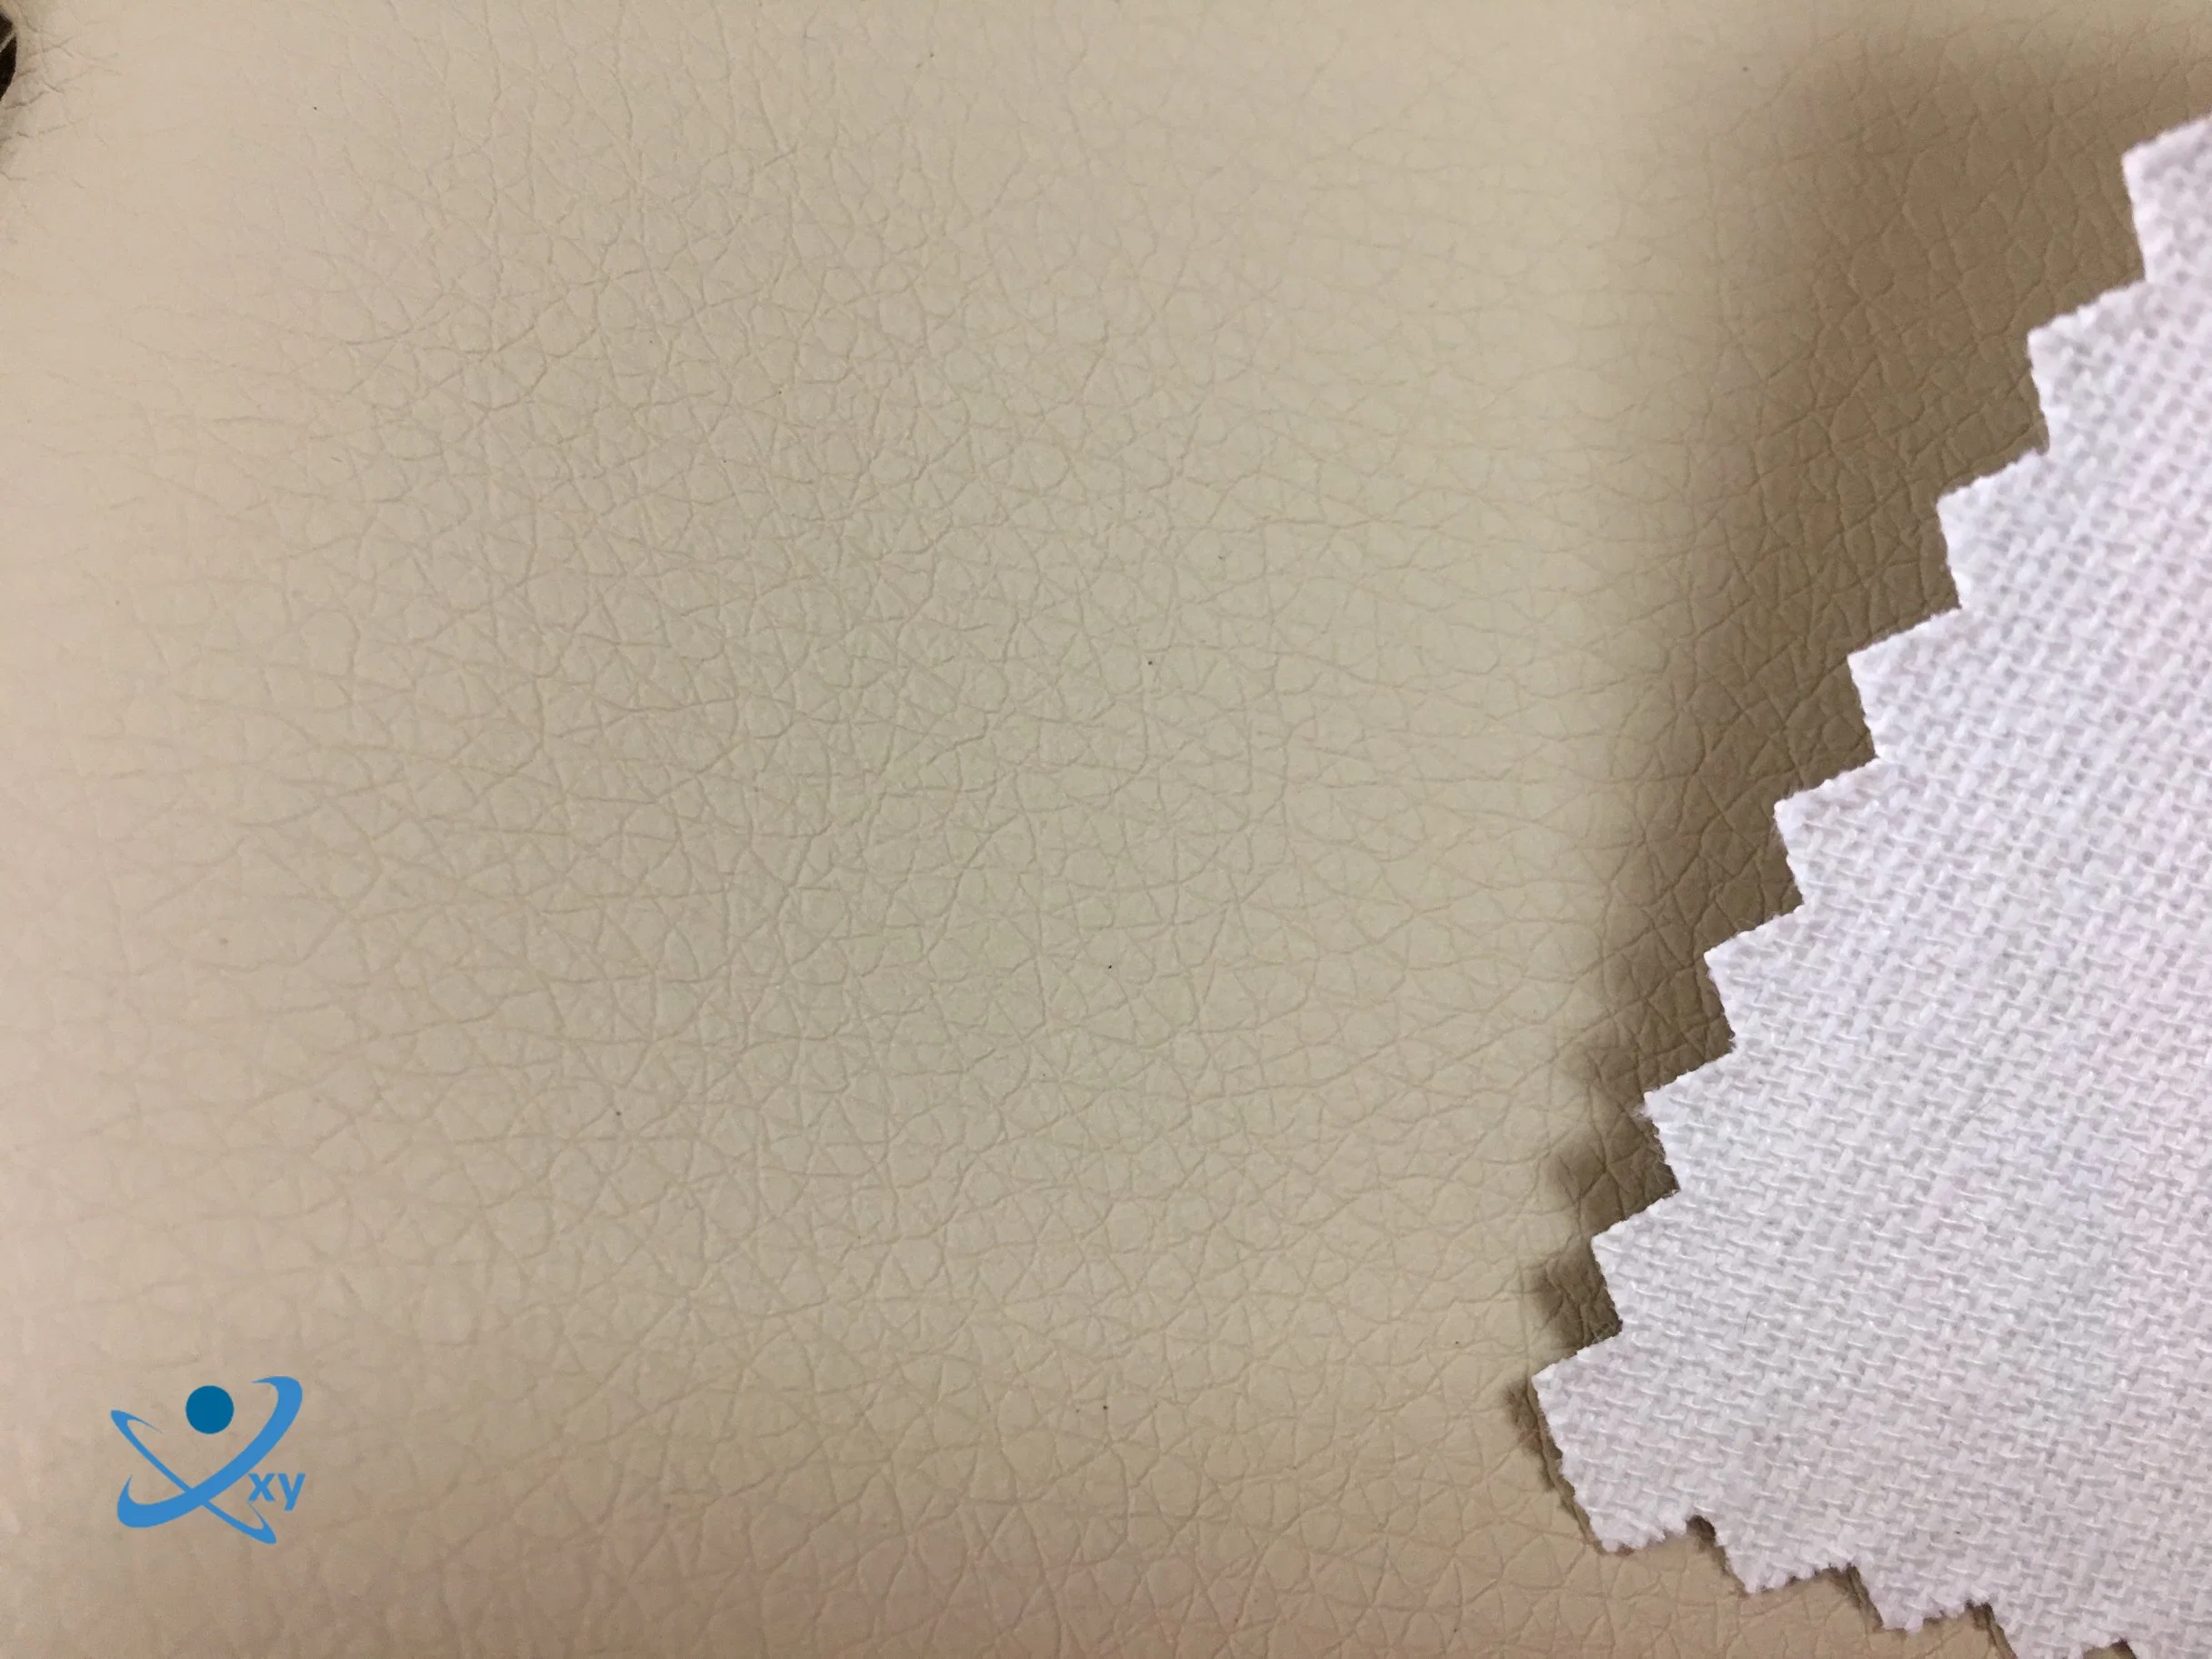 China liefern qualitativ hochwertige PU Kunstleder für die Herstellung Sofa Stoff und Handtasche Stoff/Polyester Stoff